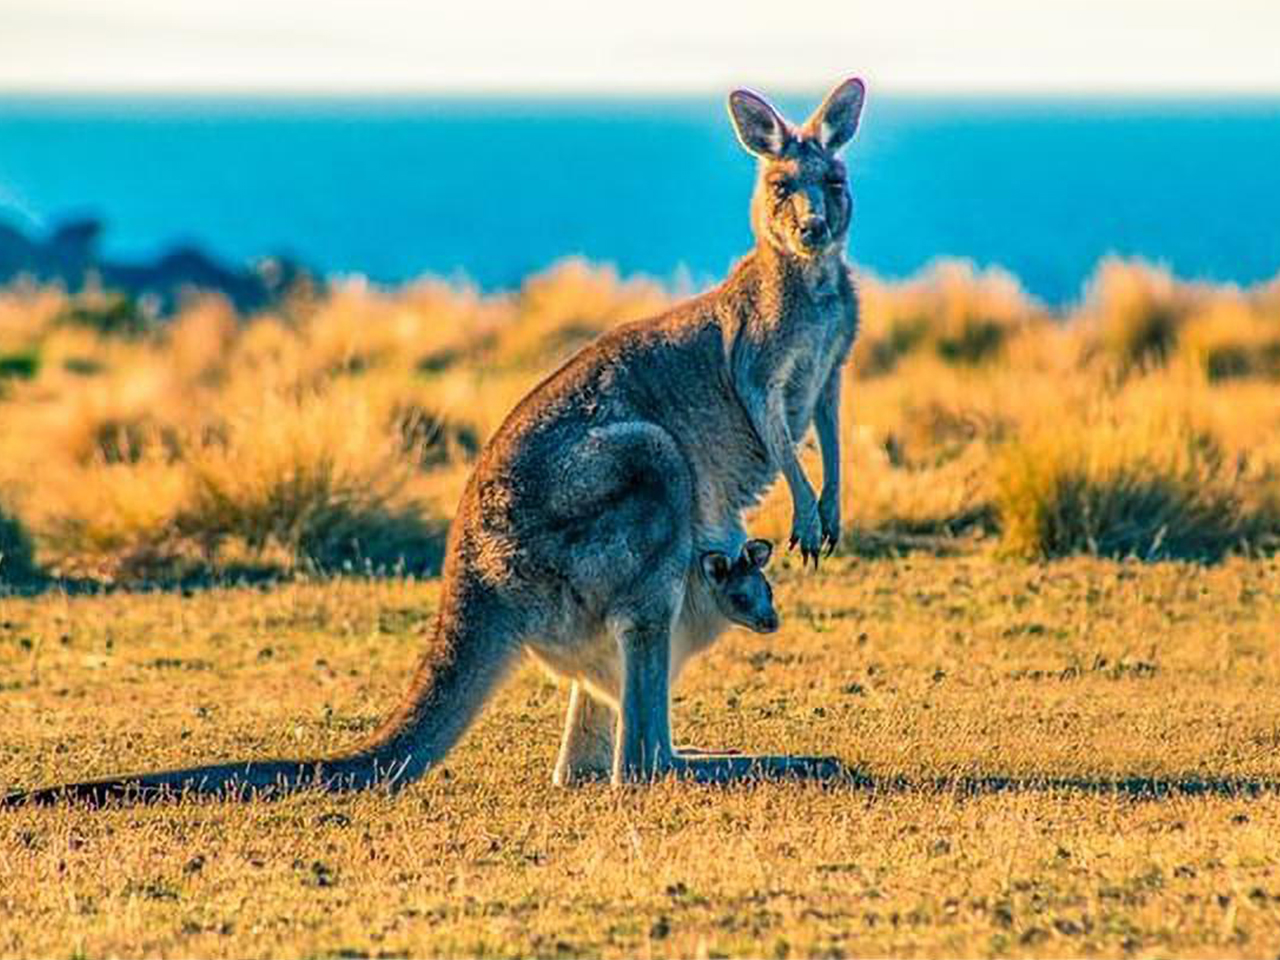 Femelle kangourou avec son bébé dans sa poche ventrale. Photo prise en Australie.